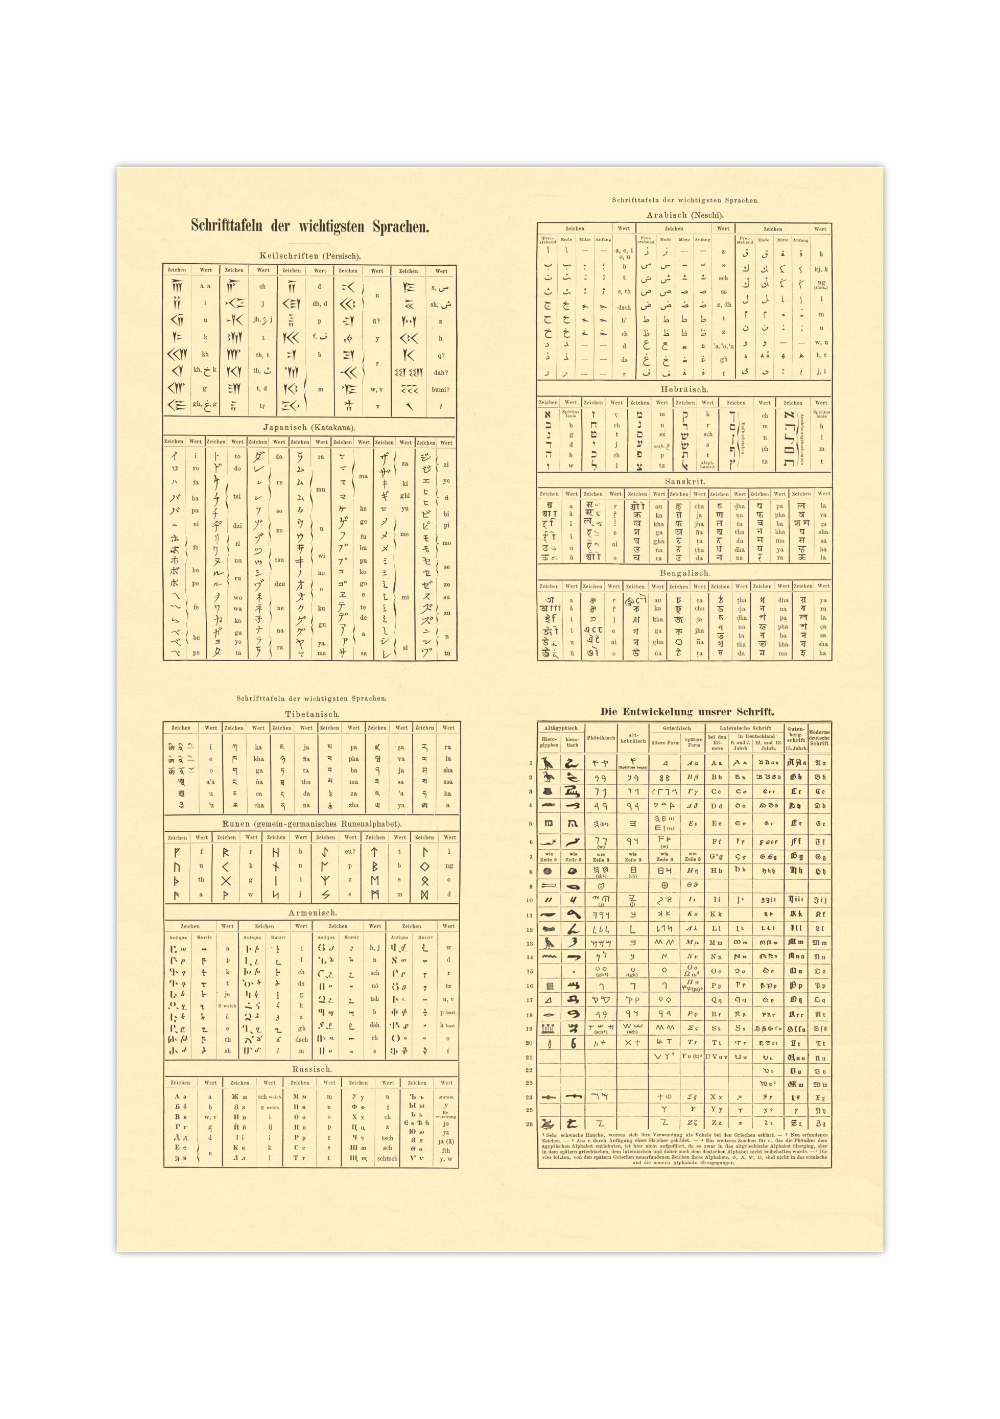 Das Poster zu Schrifttafeln der wichtigsten Sprachen ist eine Vintage Lithographie aus Meyers Koversations-Lexikon aus dem Jahr 1890.